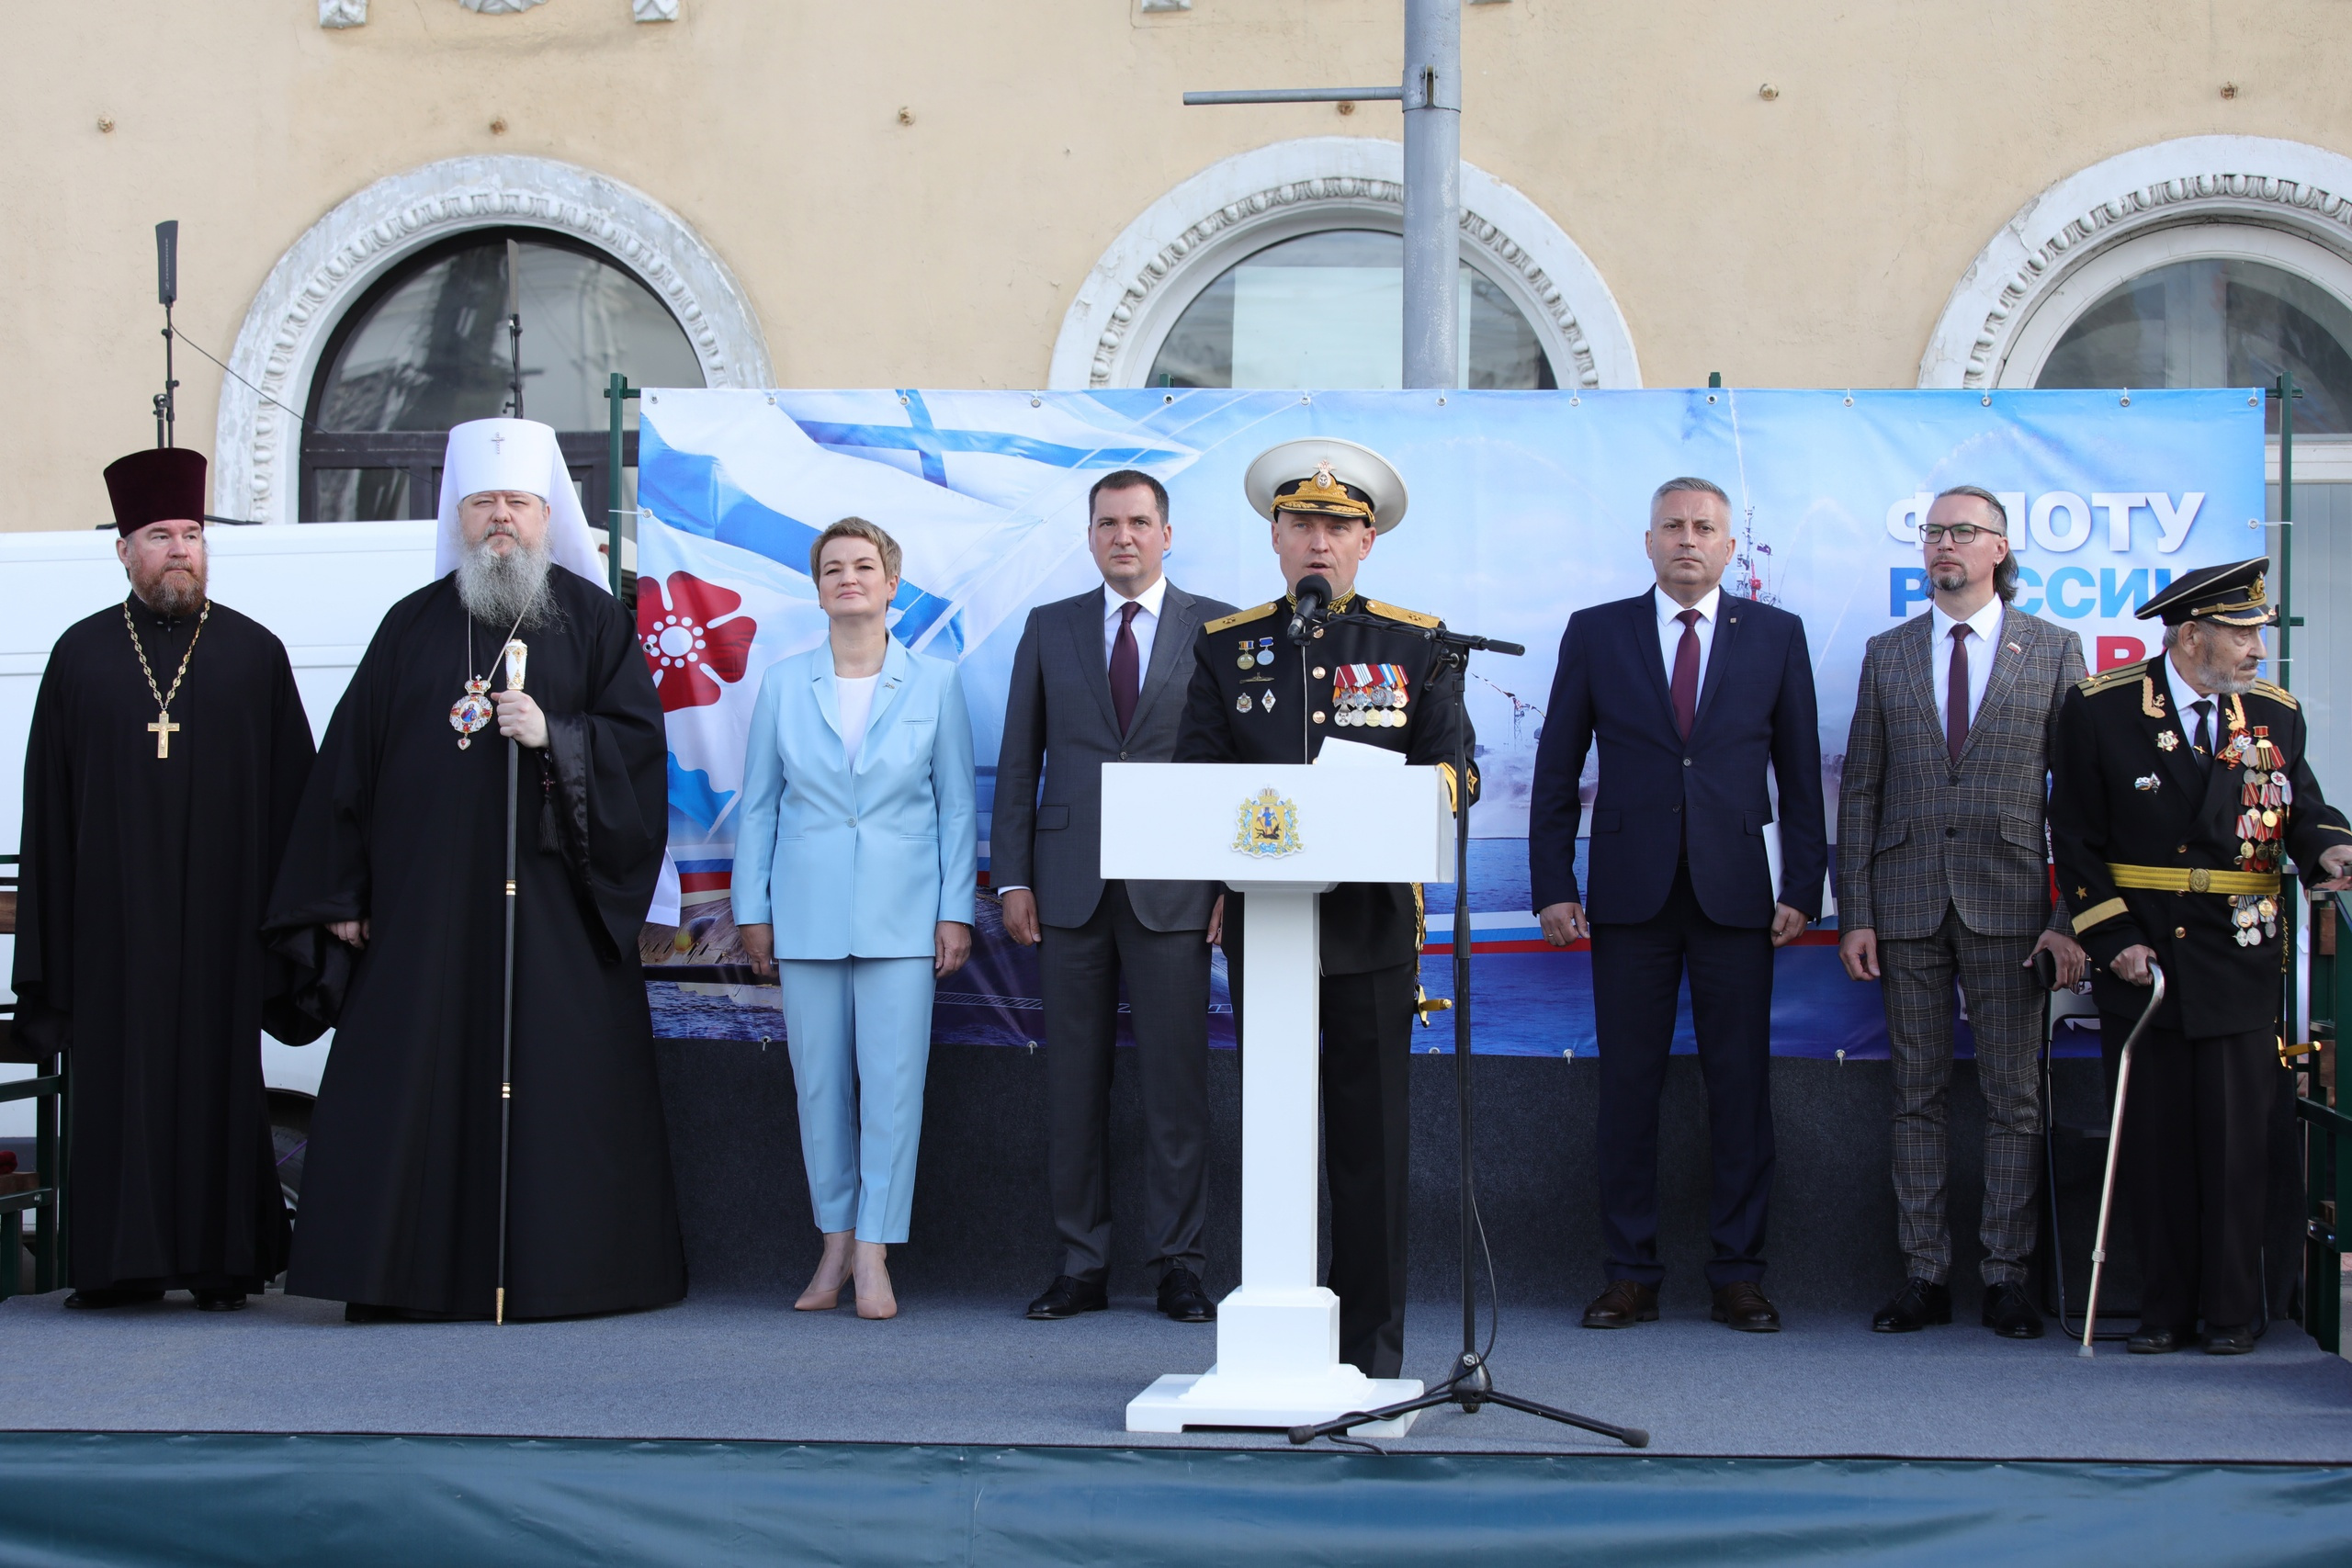 Помимо представителей власти и церкви с торжественной речью также выступили главный контр-адмирал Олег Зверев и ветеран ВОВ Михаил Симкин